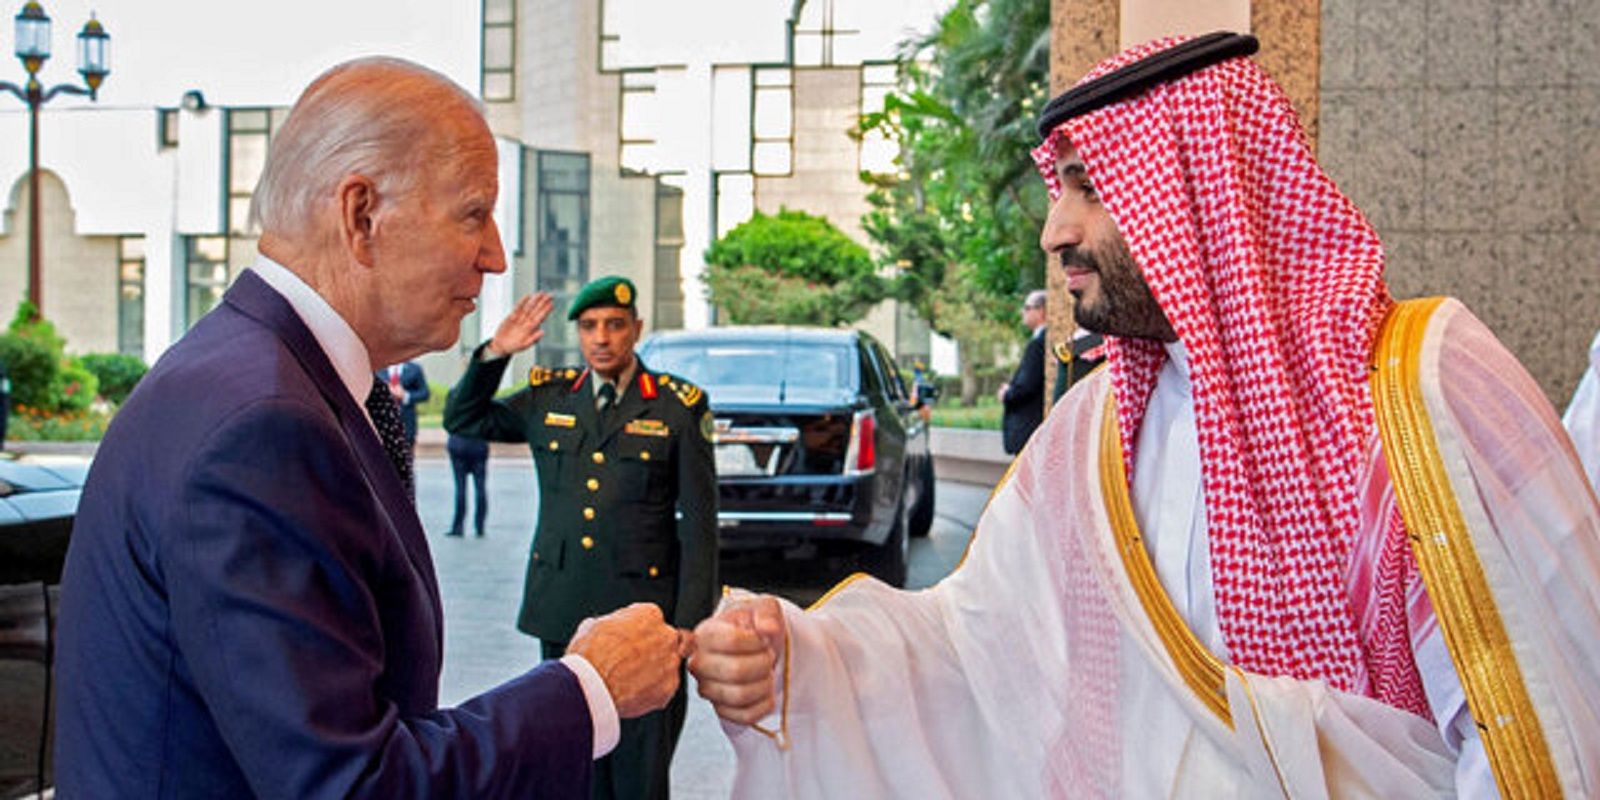  فشارهای جدید عربستان به کاخ سفید!
 